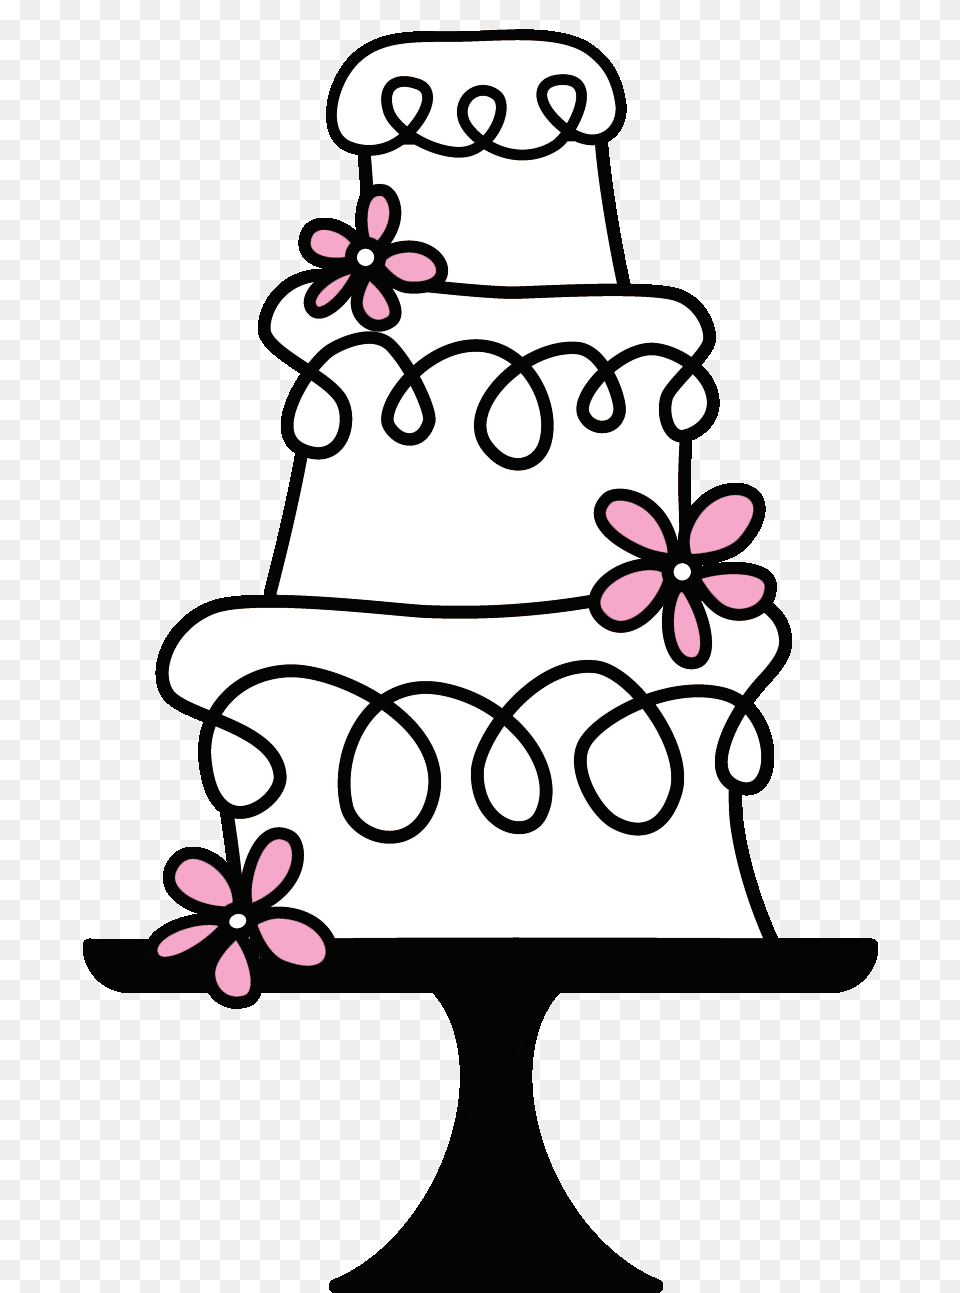 Logo Wedding Cake Logos Cake Cake Stock And Cake, Dessert, Food, Wedding Cake, Dynamite Free Png